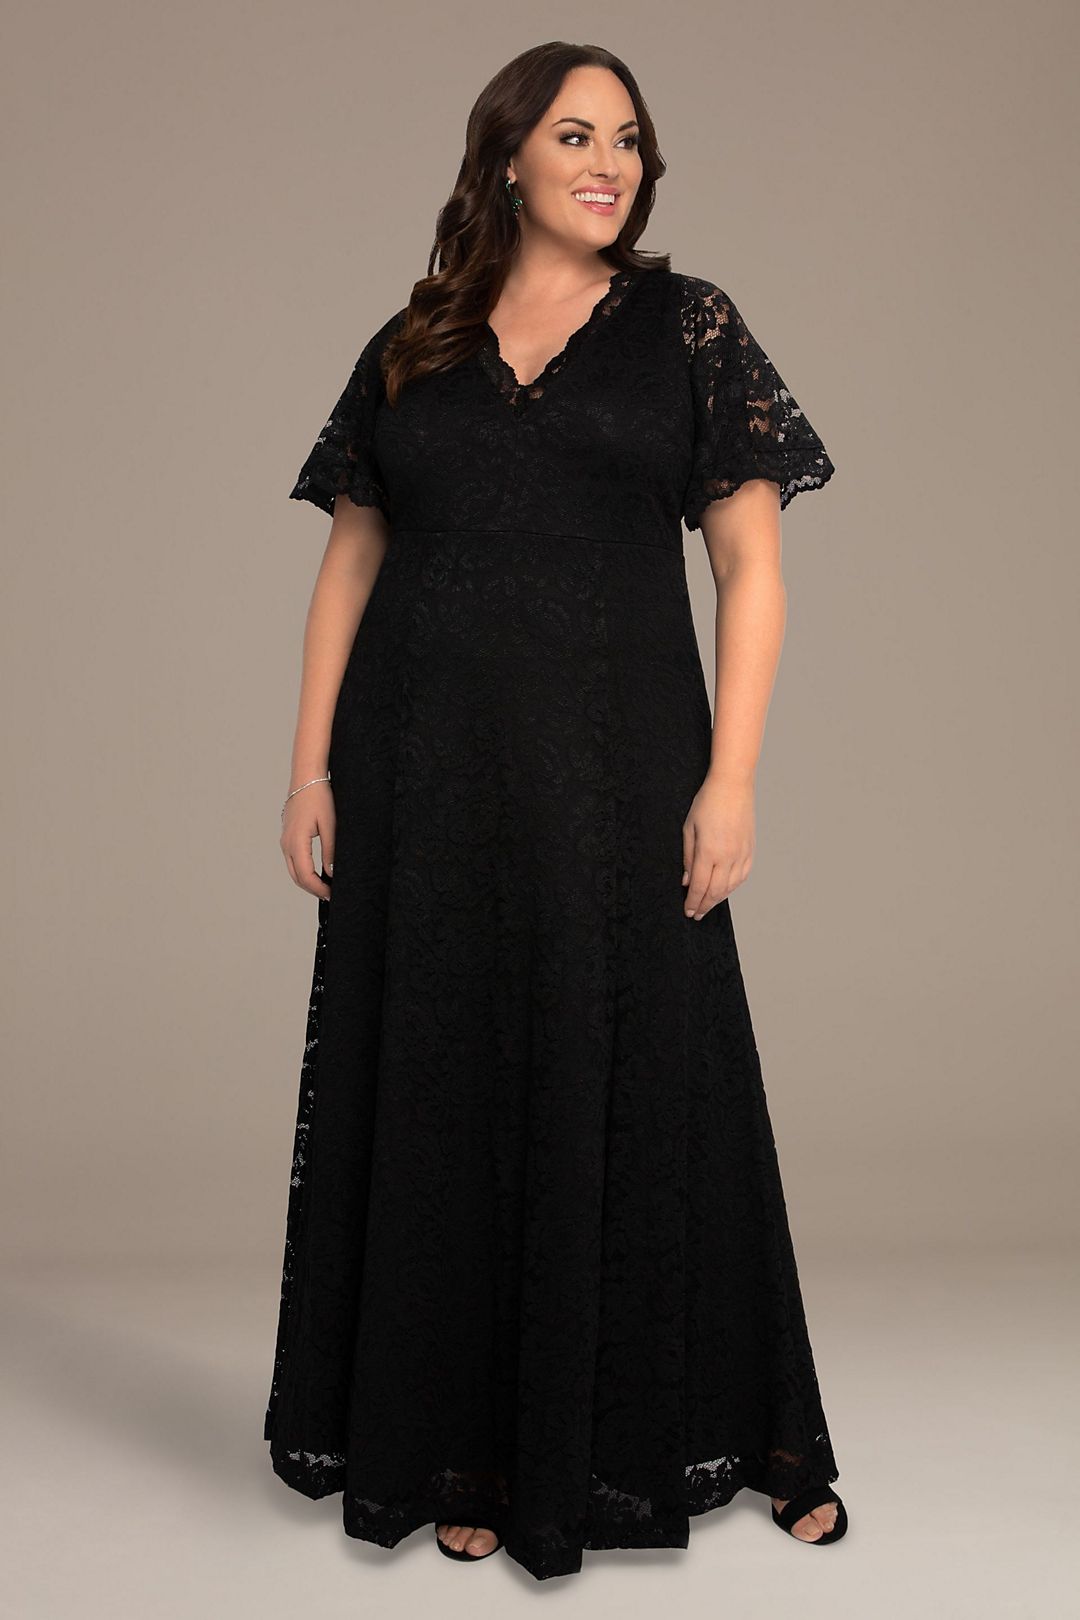 Symphony Lace Plus Size Evening Gown Image 1